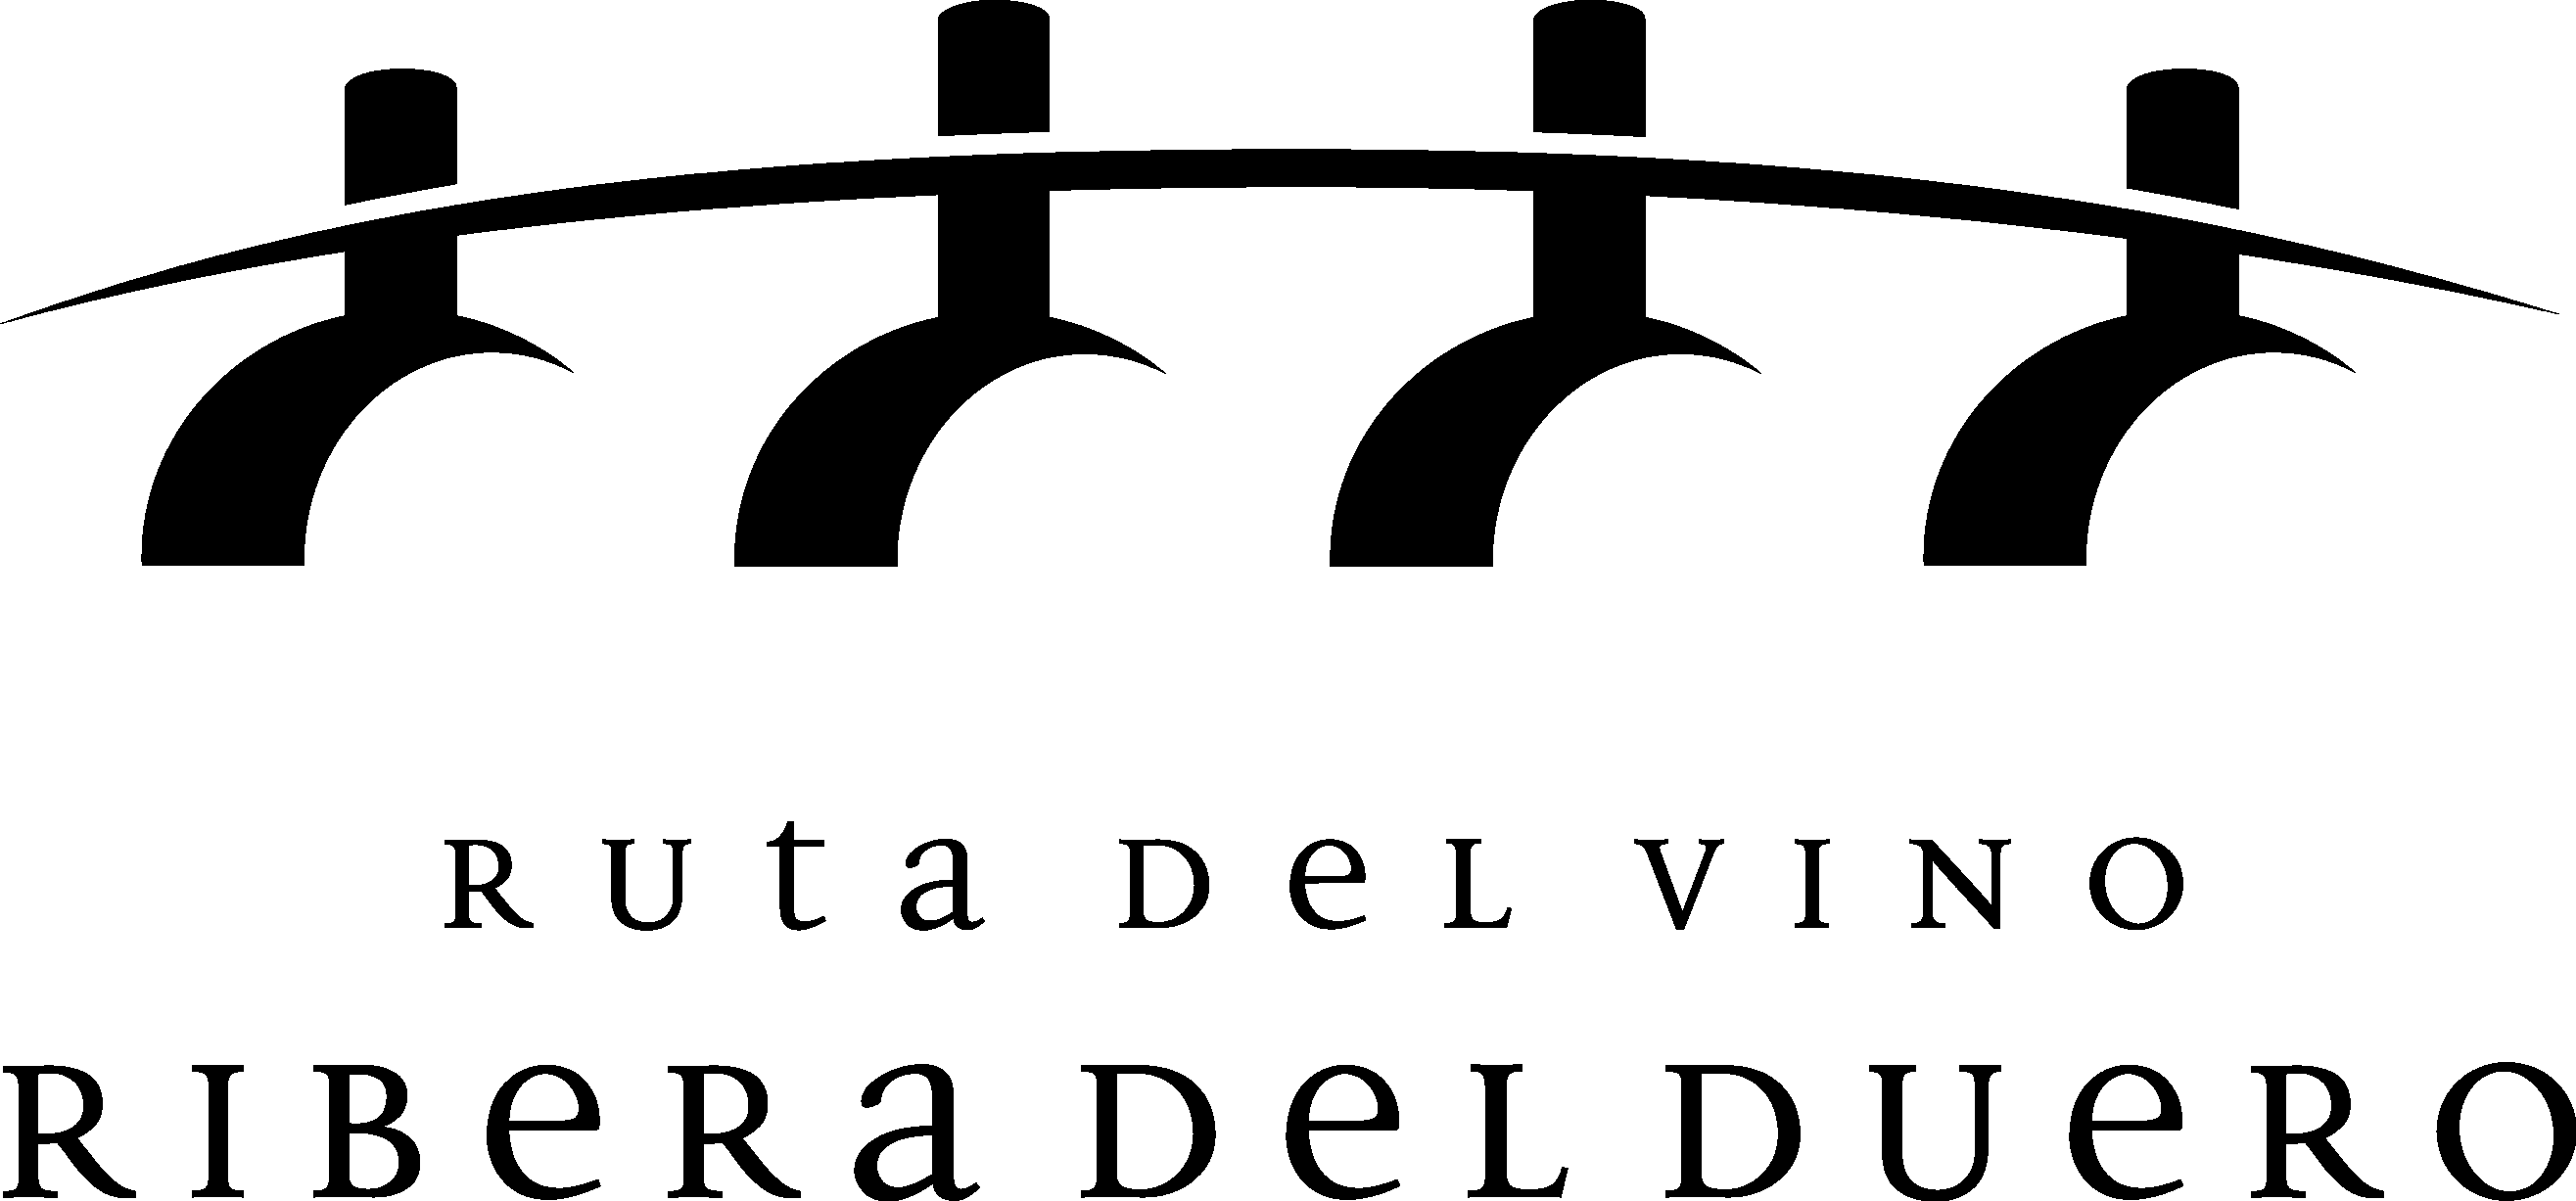 Logo-Ribera-del-duero